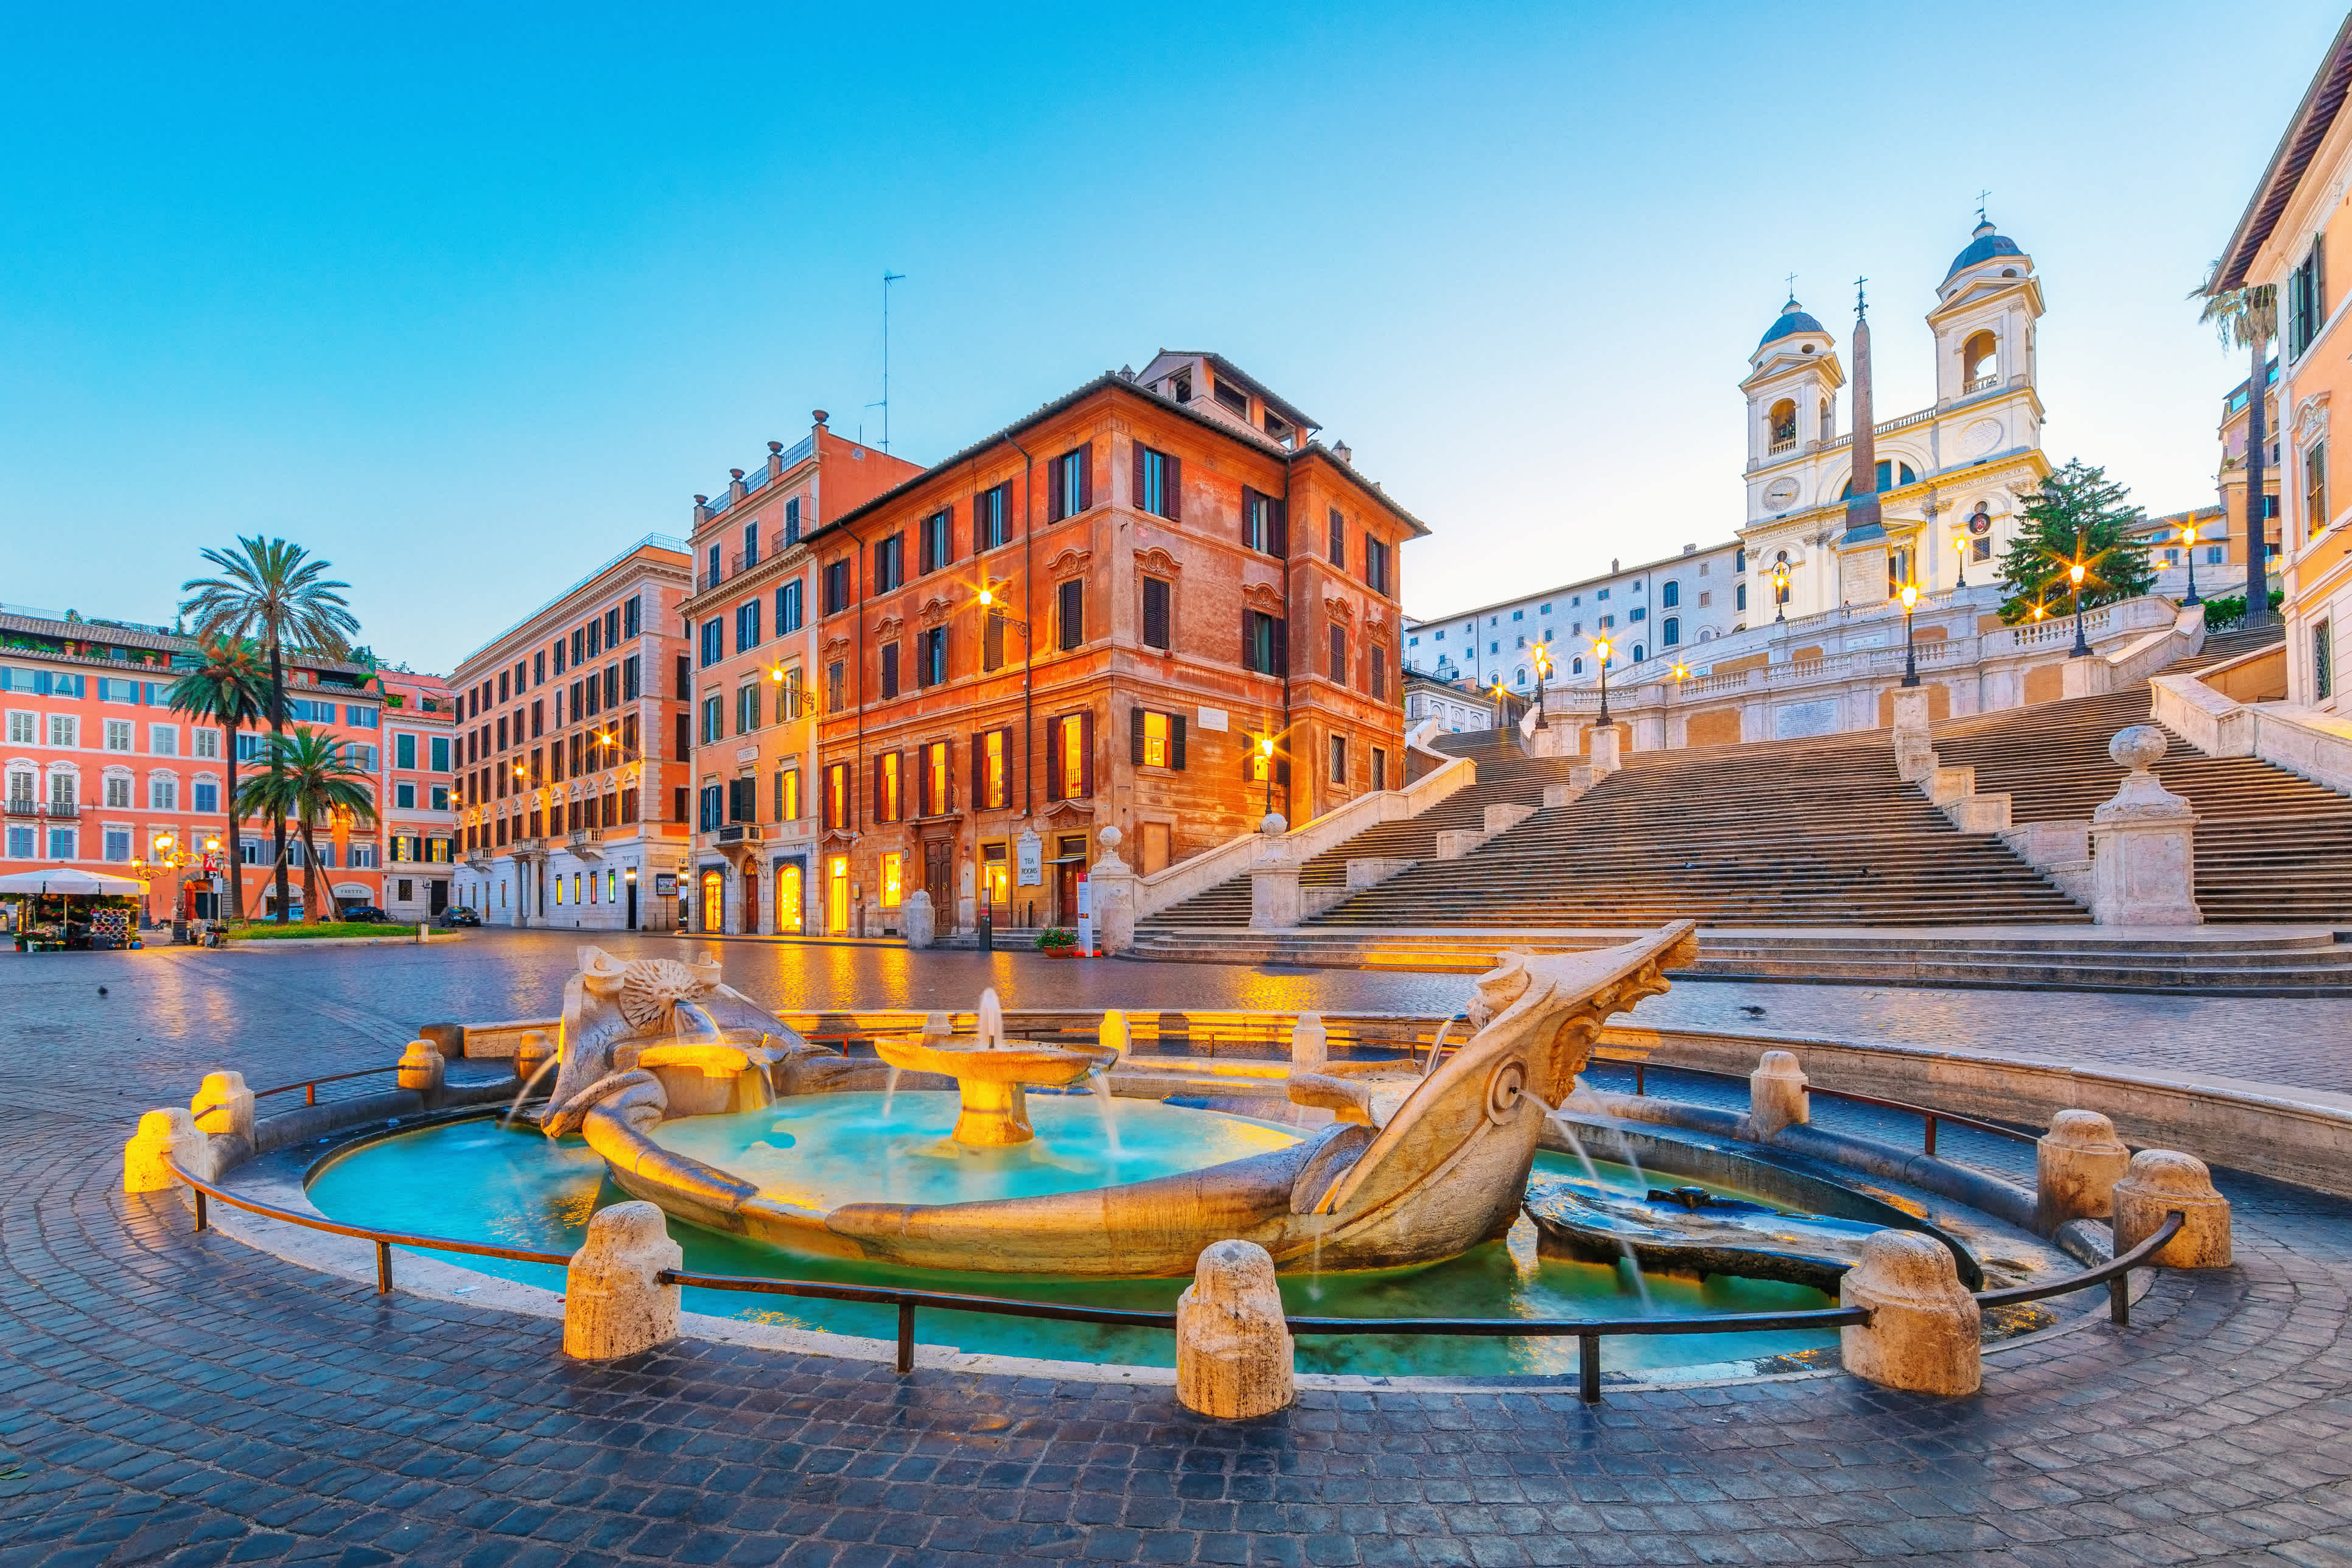 Fontaine Barcaccia et escalier espagnol sur la place d'Espagne, Rome, Italie